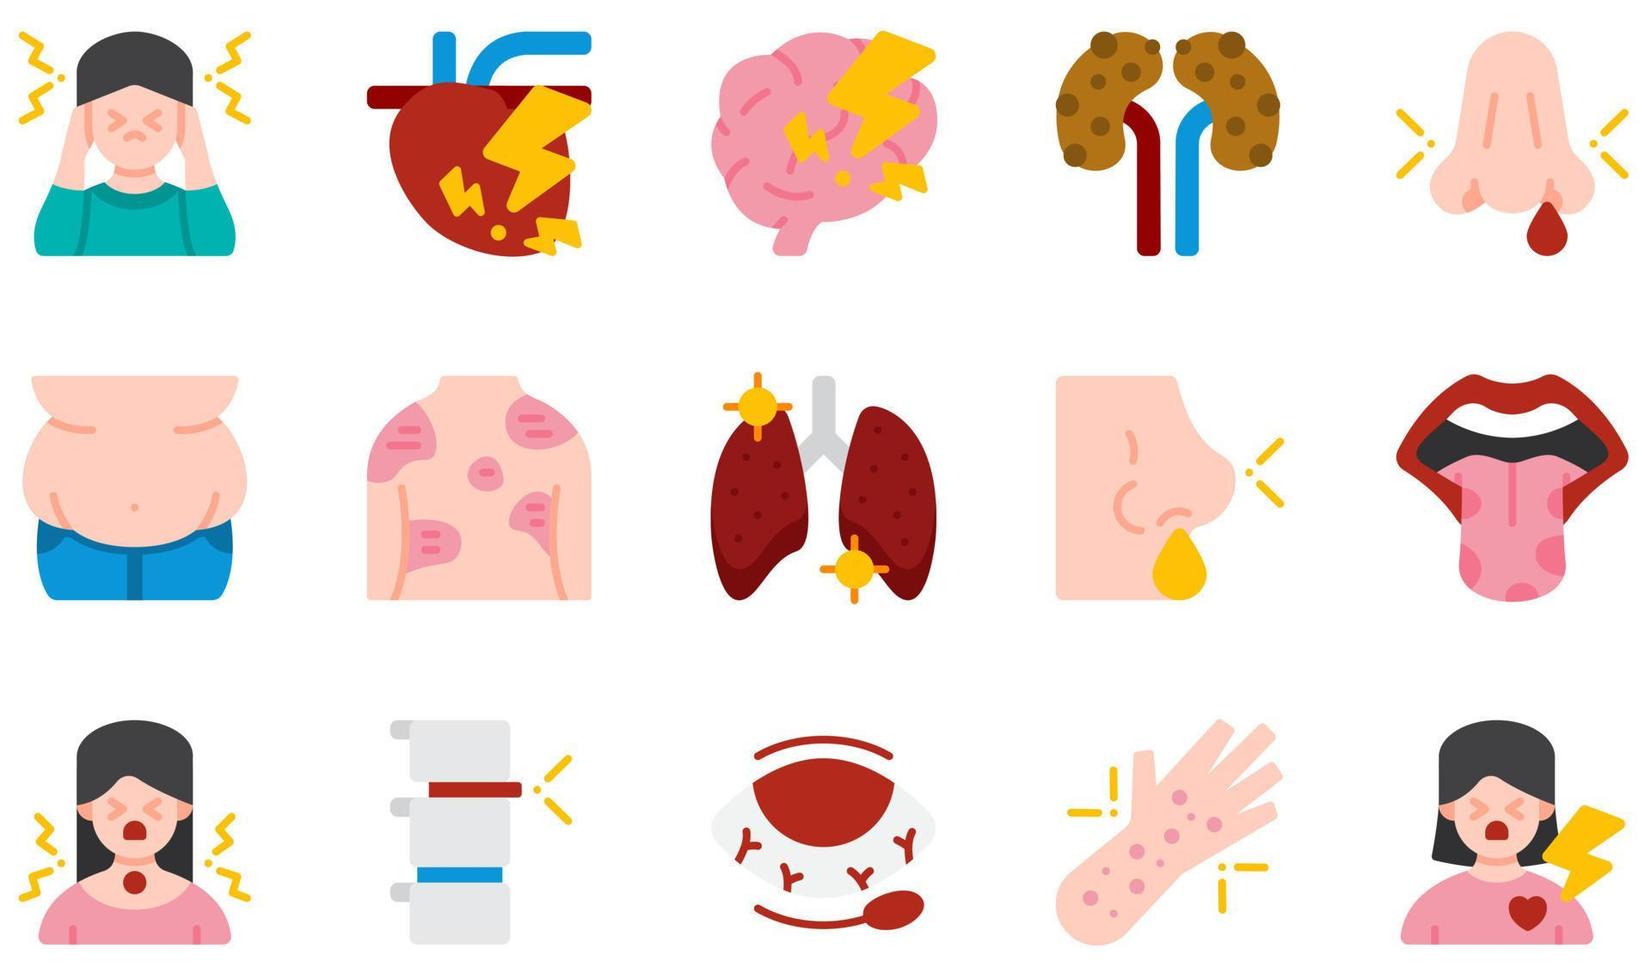 Reihe von Vektorsymbolen im Zusammenhang mit Krankheiten. enthält Symbole wie Magenreflux, Glossitis, Kopfschmerzen, Herzkrankheiten, Fettleibigkeit, Hordeolum und mehr. vektor